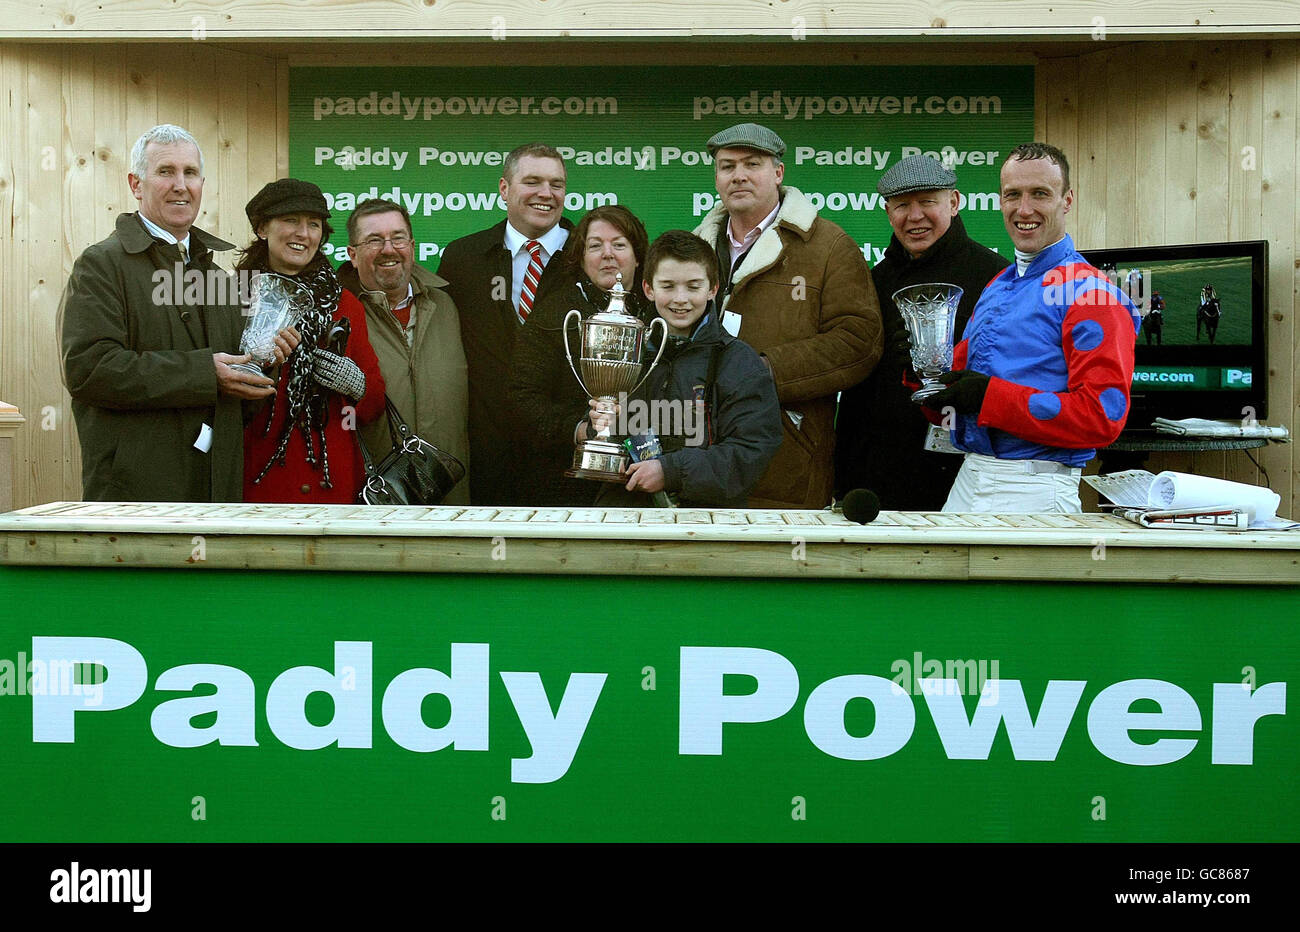 Die Gewinnergruppe feiert die Oscar-Zeit, die Robbie Powers (rechter) Sieg in der Paddy Power Steeplechase während des Weihnachtsfestivals auf der Leopardstown Racecourse, Dublin, Irland, zu feiern hat. Stockfoto